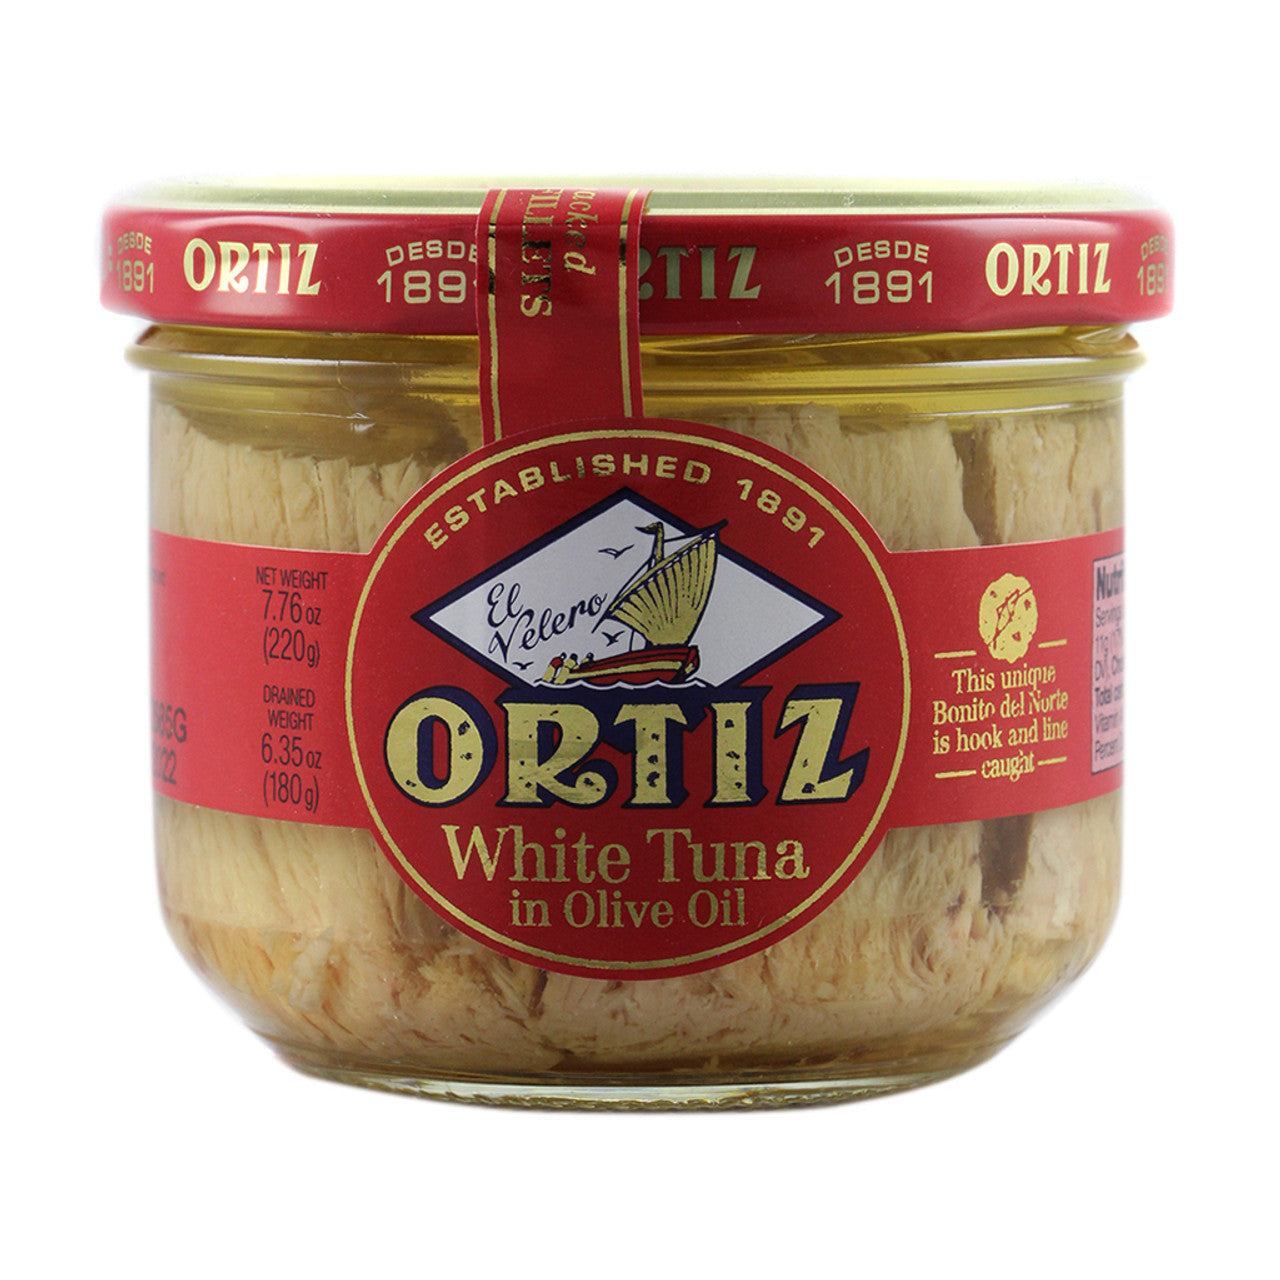 Ortiz Bonito in Oil Glass Jar 220g 12ct